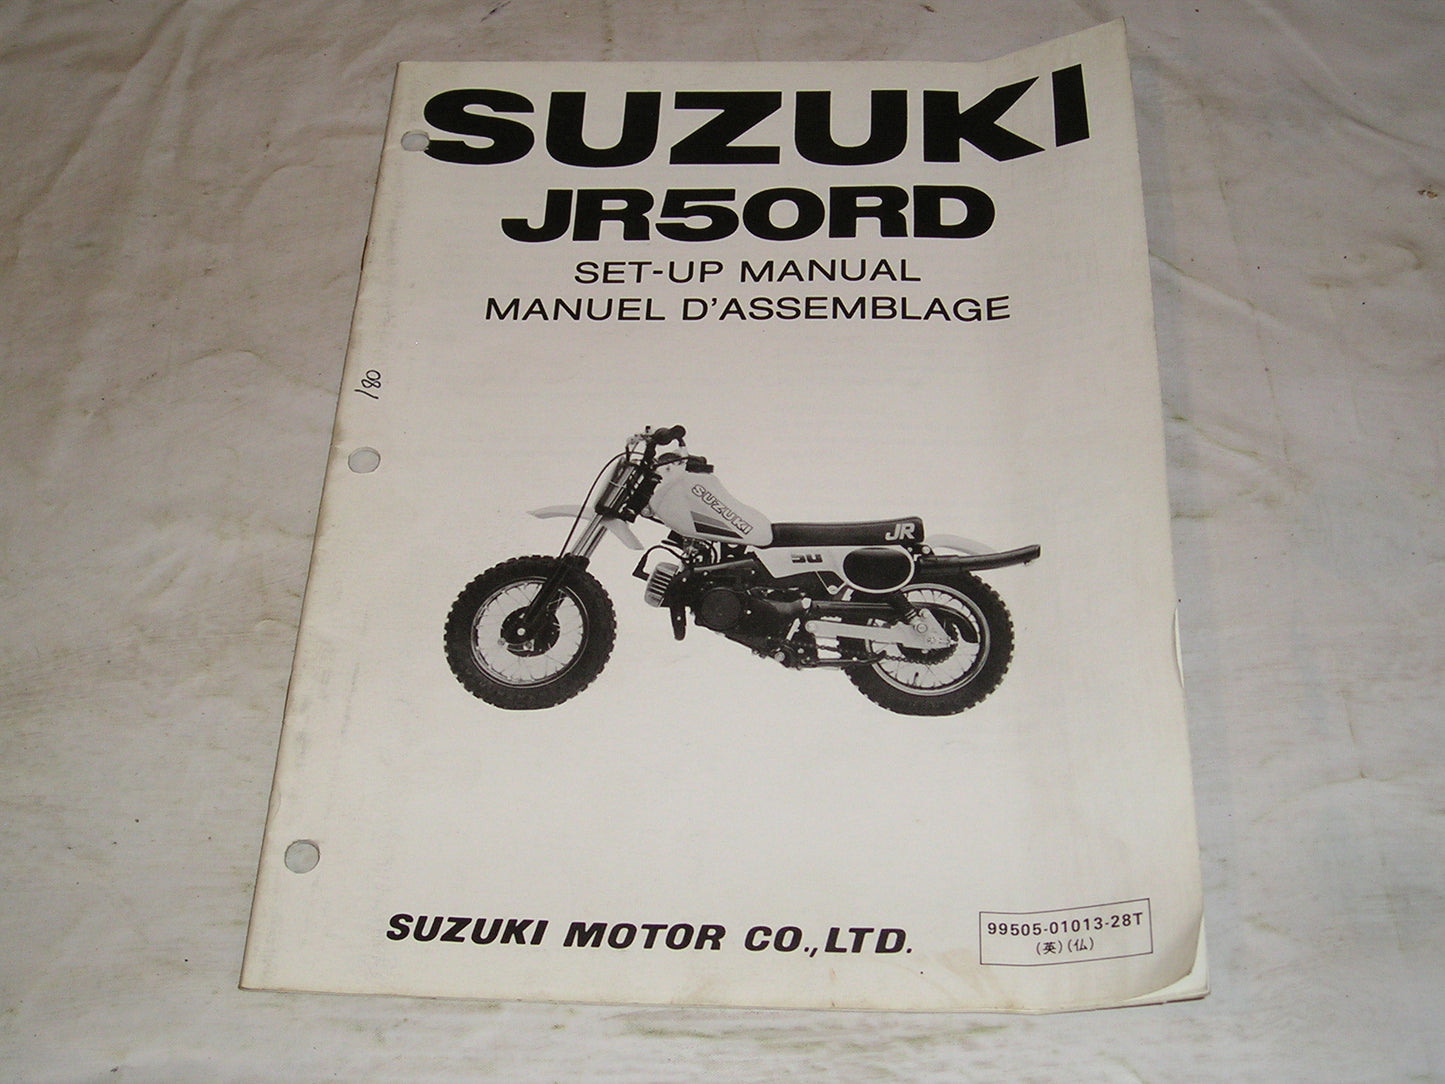 SUZUKI JR50 RD  1982  Set-up Manual  99505-01013-28T  #180